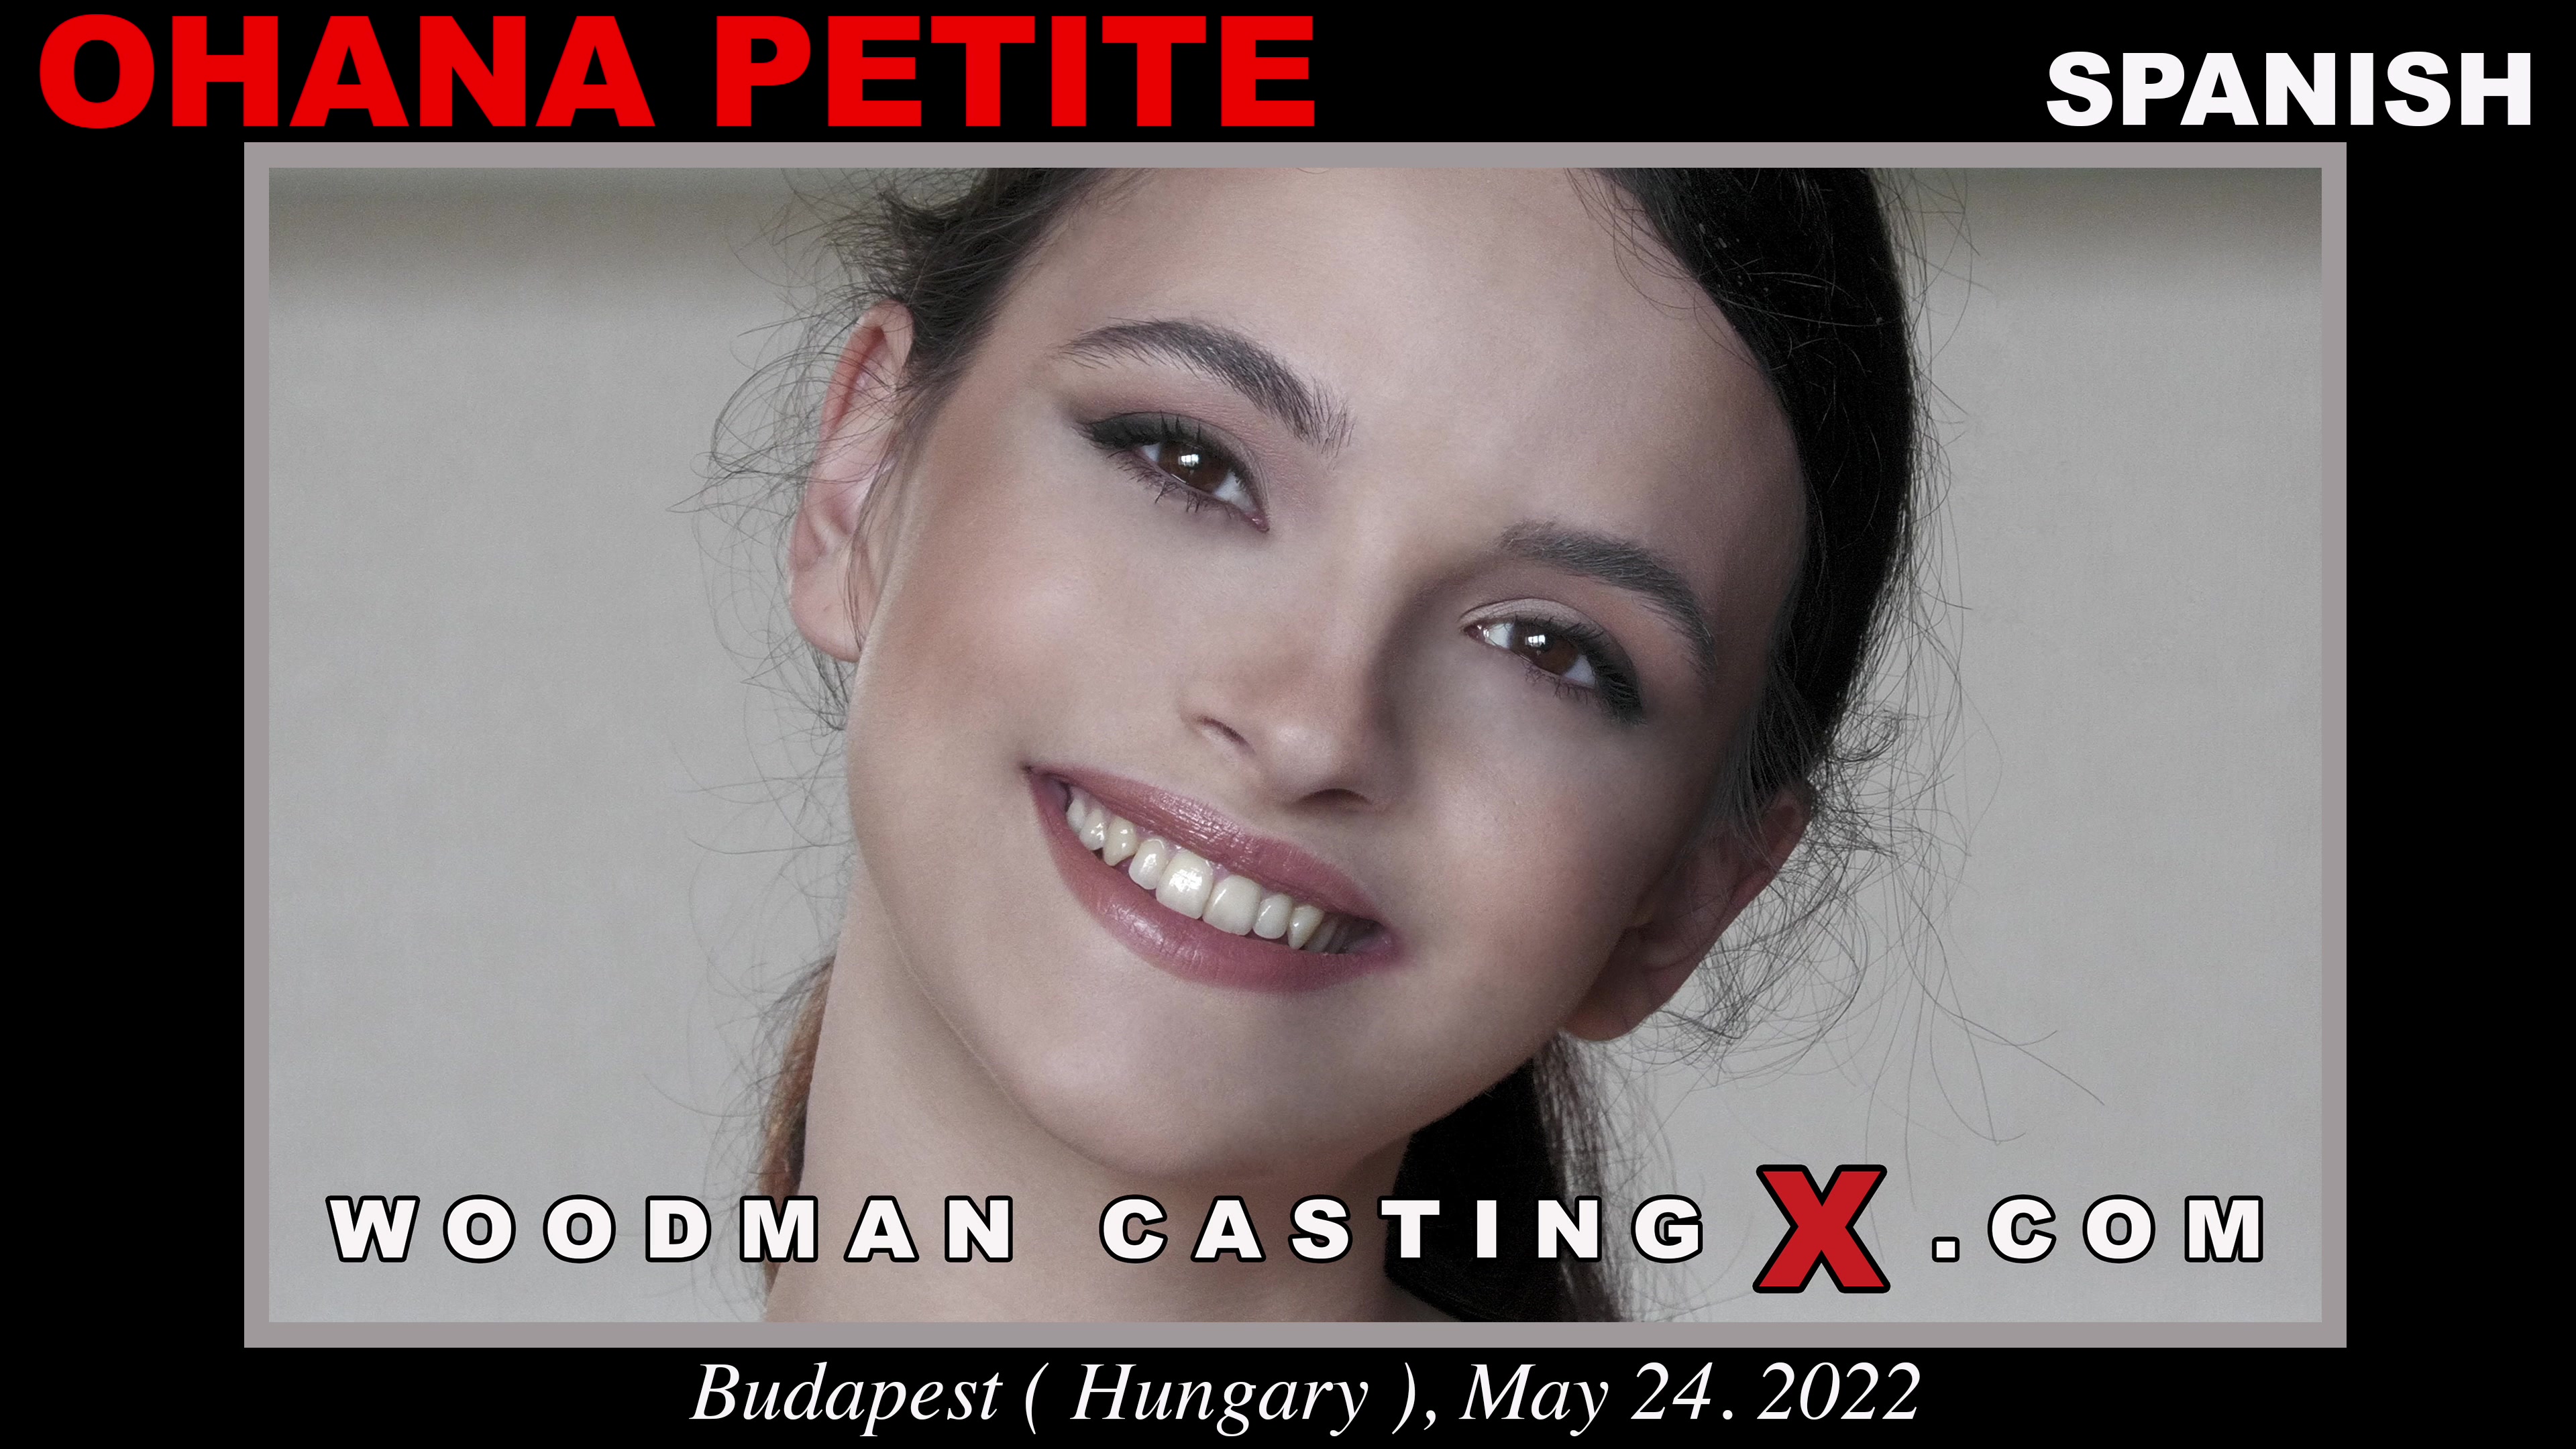 Woodman Casting X on X: [New Video] Ohana Petite - Casting X    / X